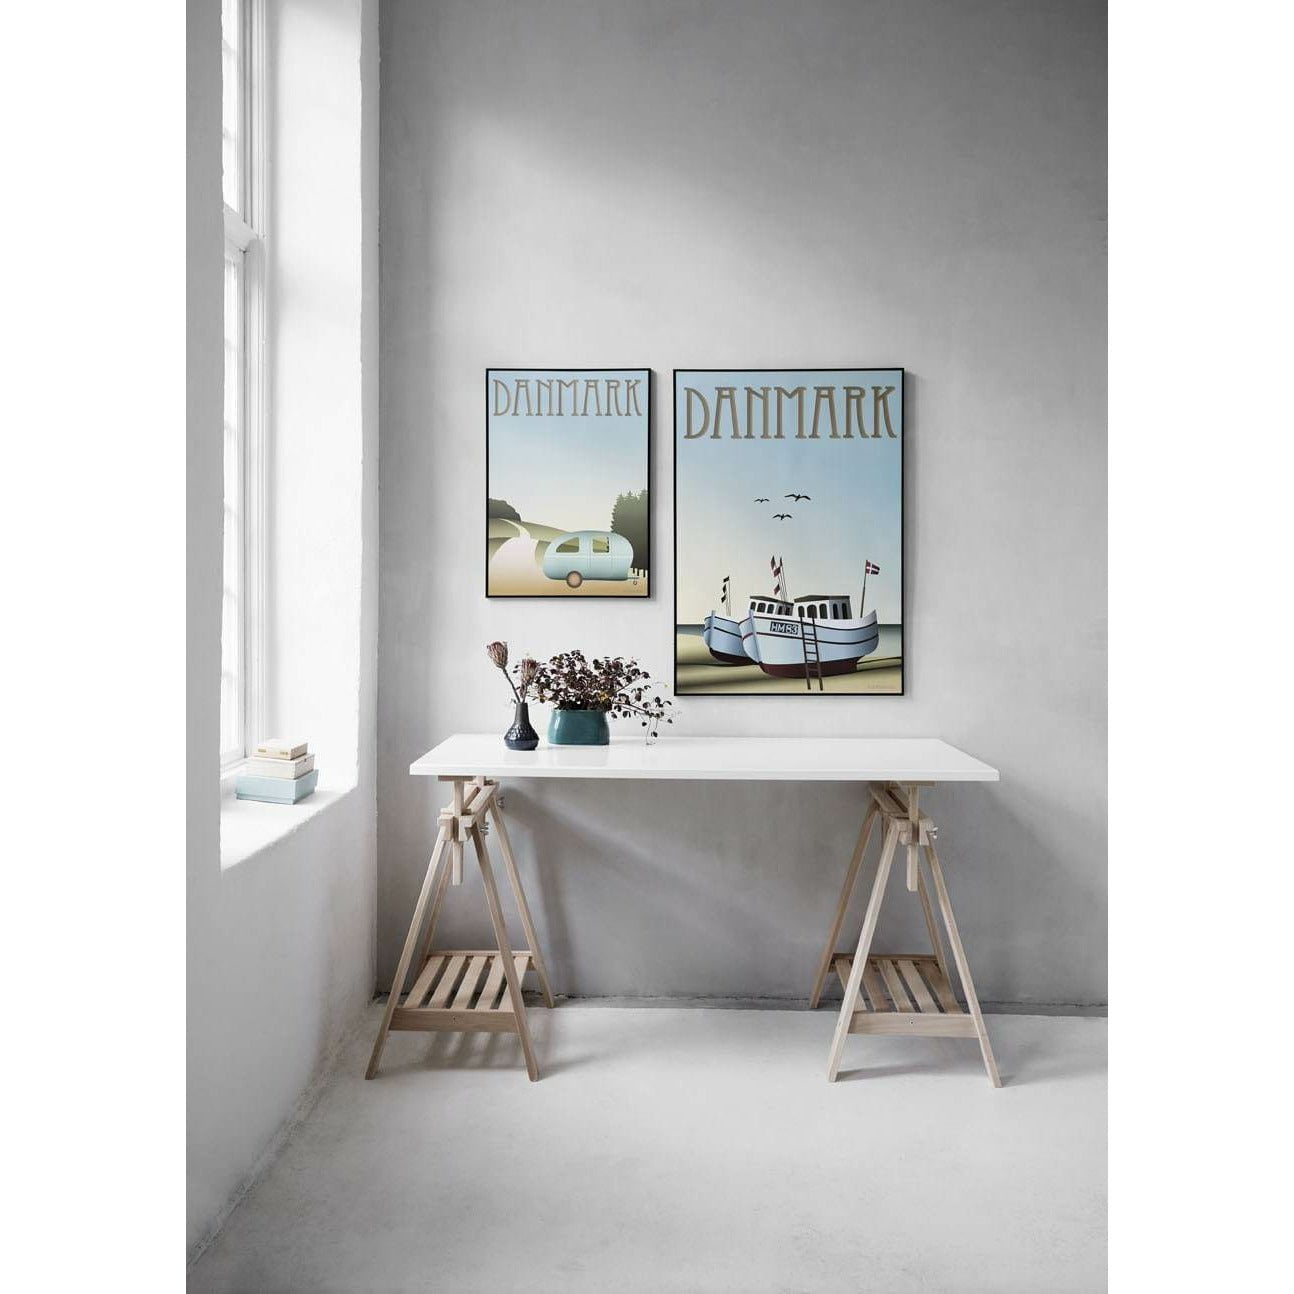 Vissevasse Denemarken vissersboten poster, 70 x100 cm